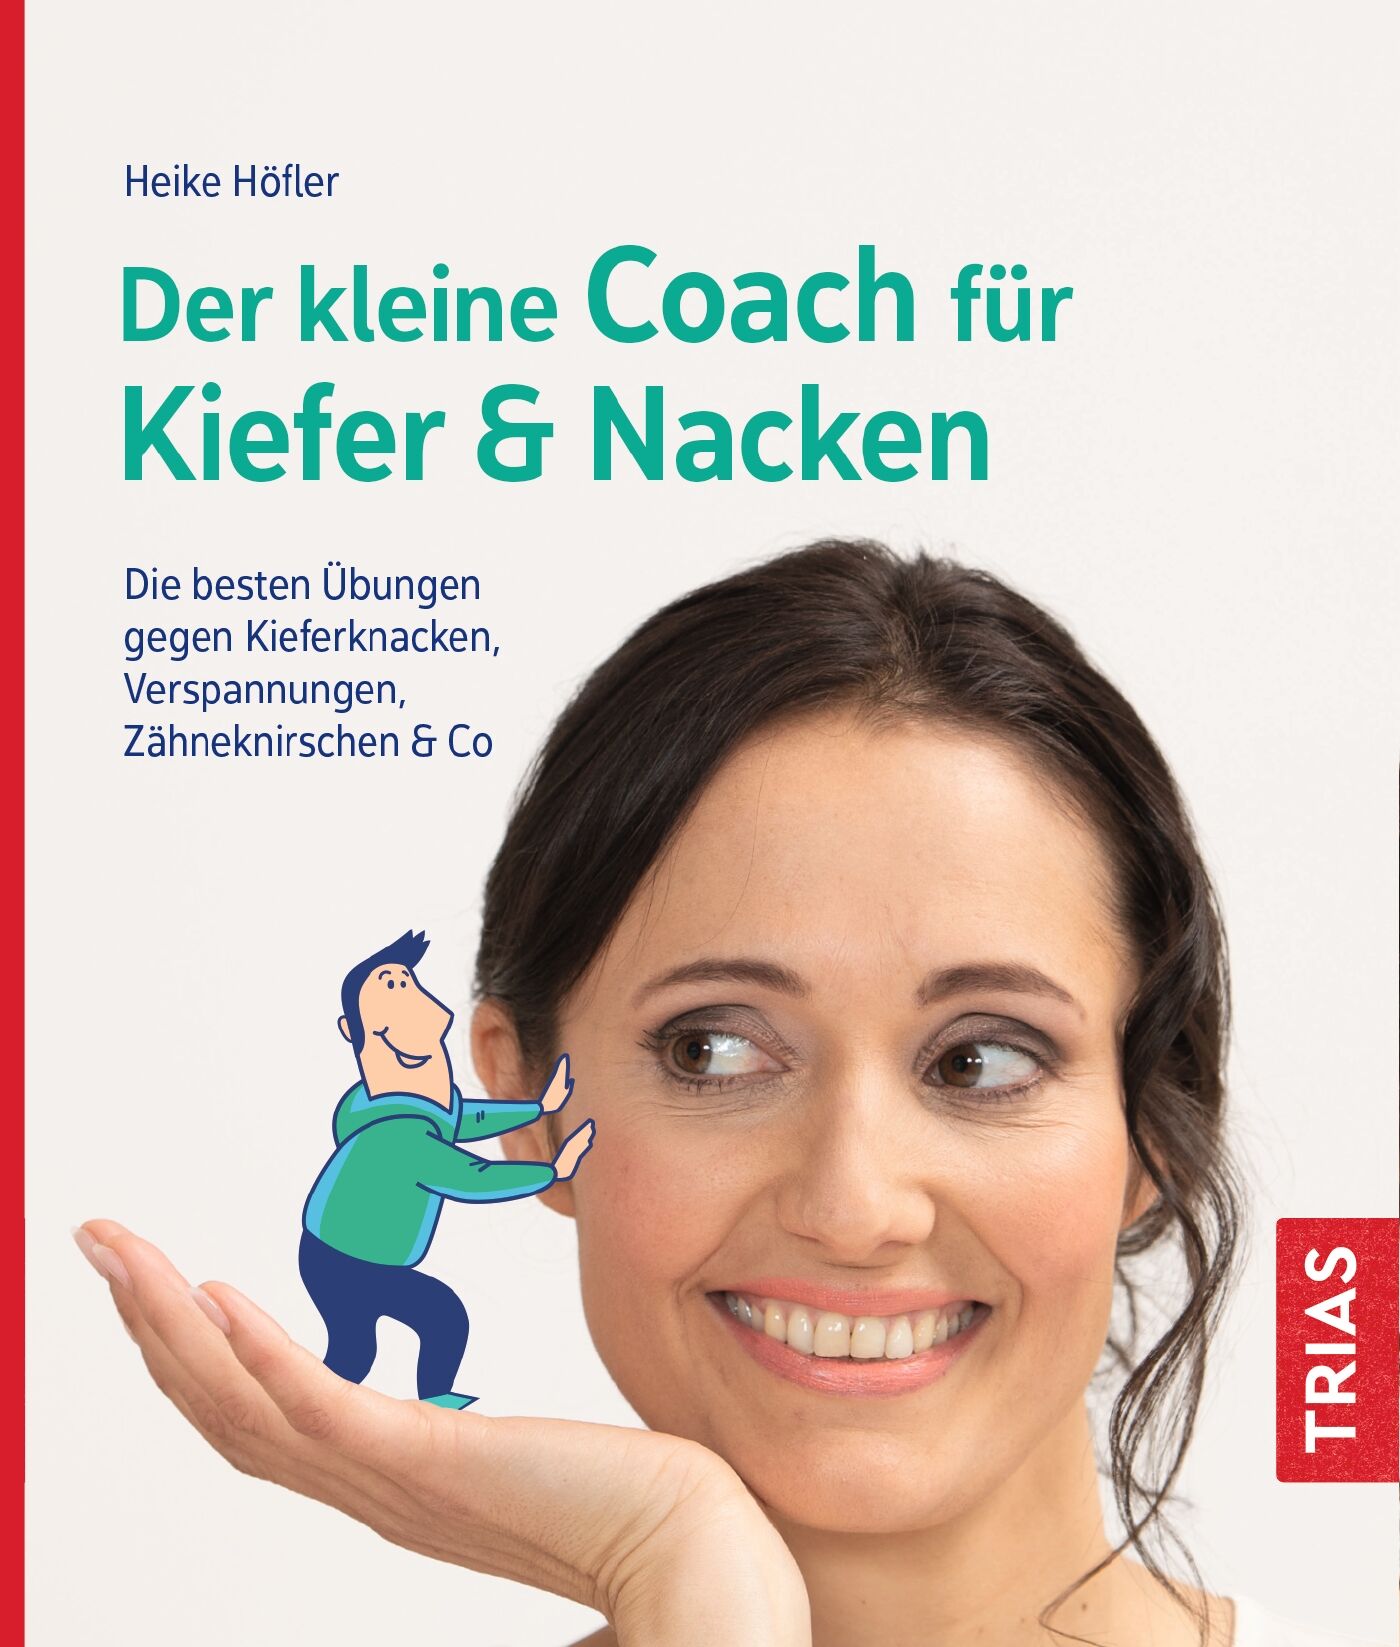 Der kleine Coach für Kiefer & Nacken, 9783432113838